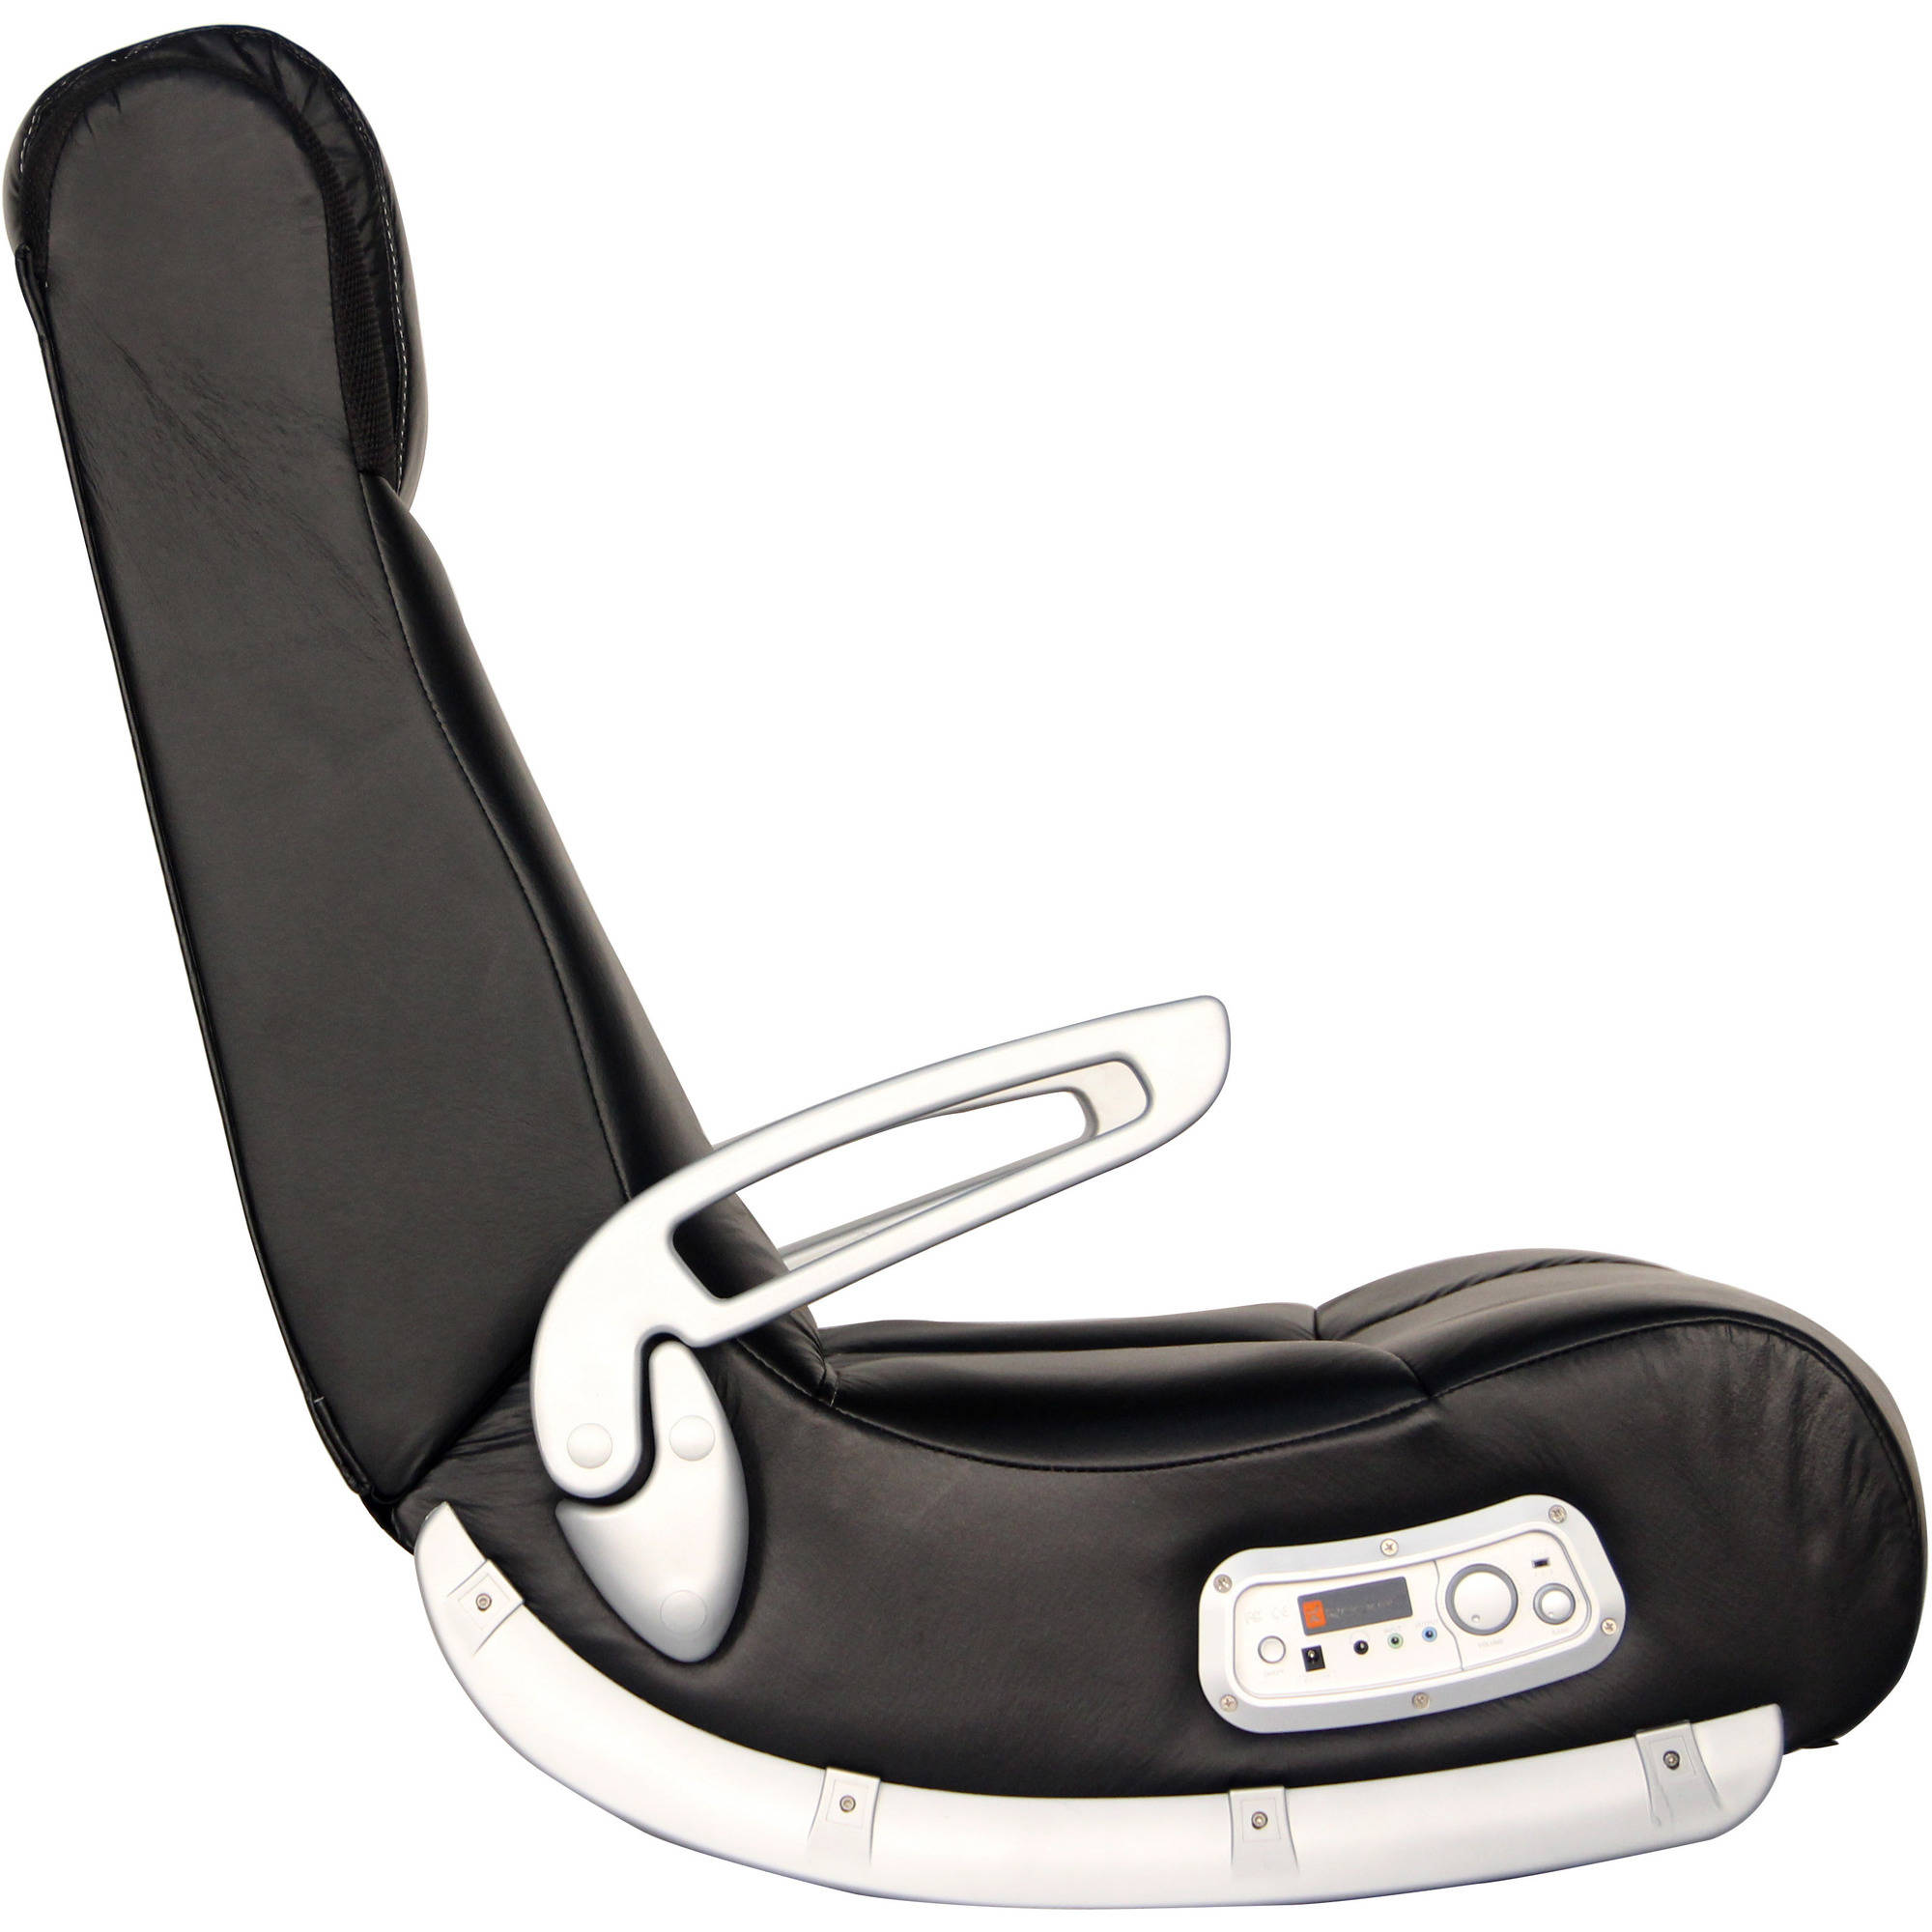 X Rocker II SE 2.1 Wireless Gaming Chair Rocker, Black - image 3 of 7